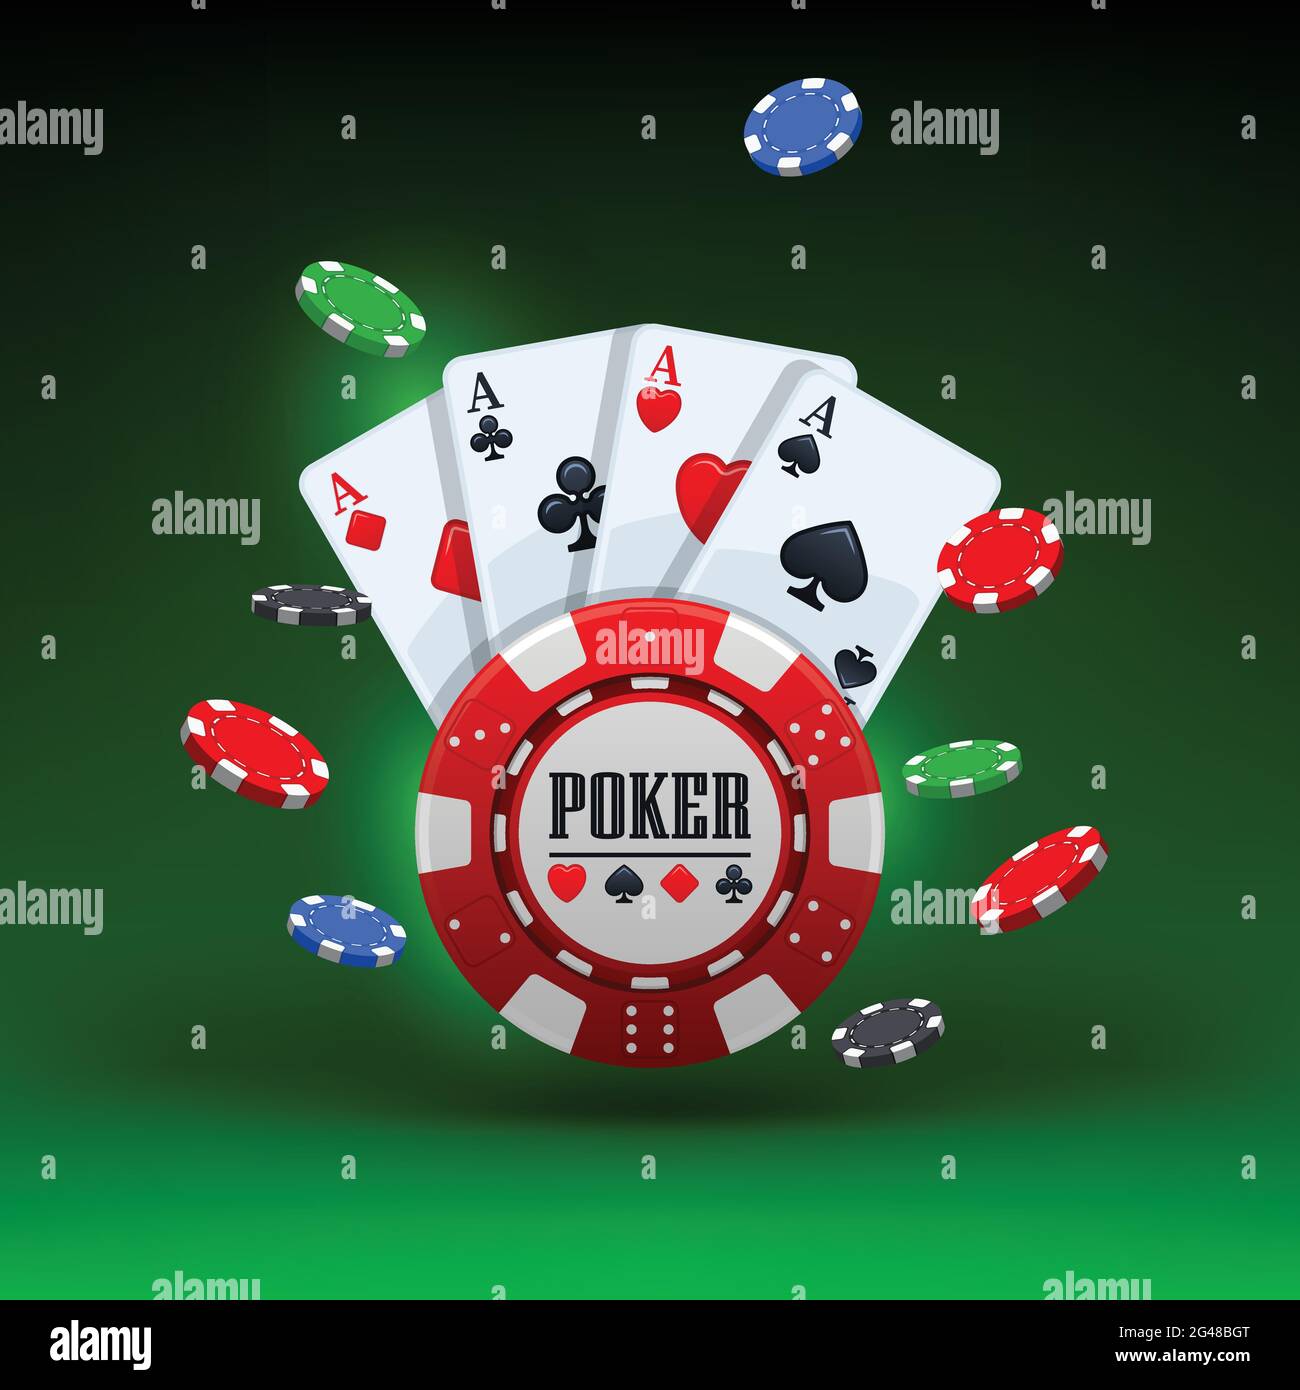 Giải đấu poker với bộ bài và chip trên nền xanh thật hấp dẫn! Tham gia vào cuộc đua trí tuệ với những đối thủ thân thiện và xem ai là người sở hữu bộ bài may mắn nhất. Hãy chuẩn bị sẵn sàng để lại dấu ấn trong giải đấu này nào!